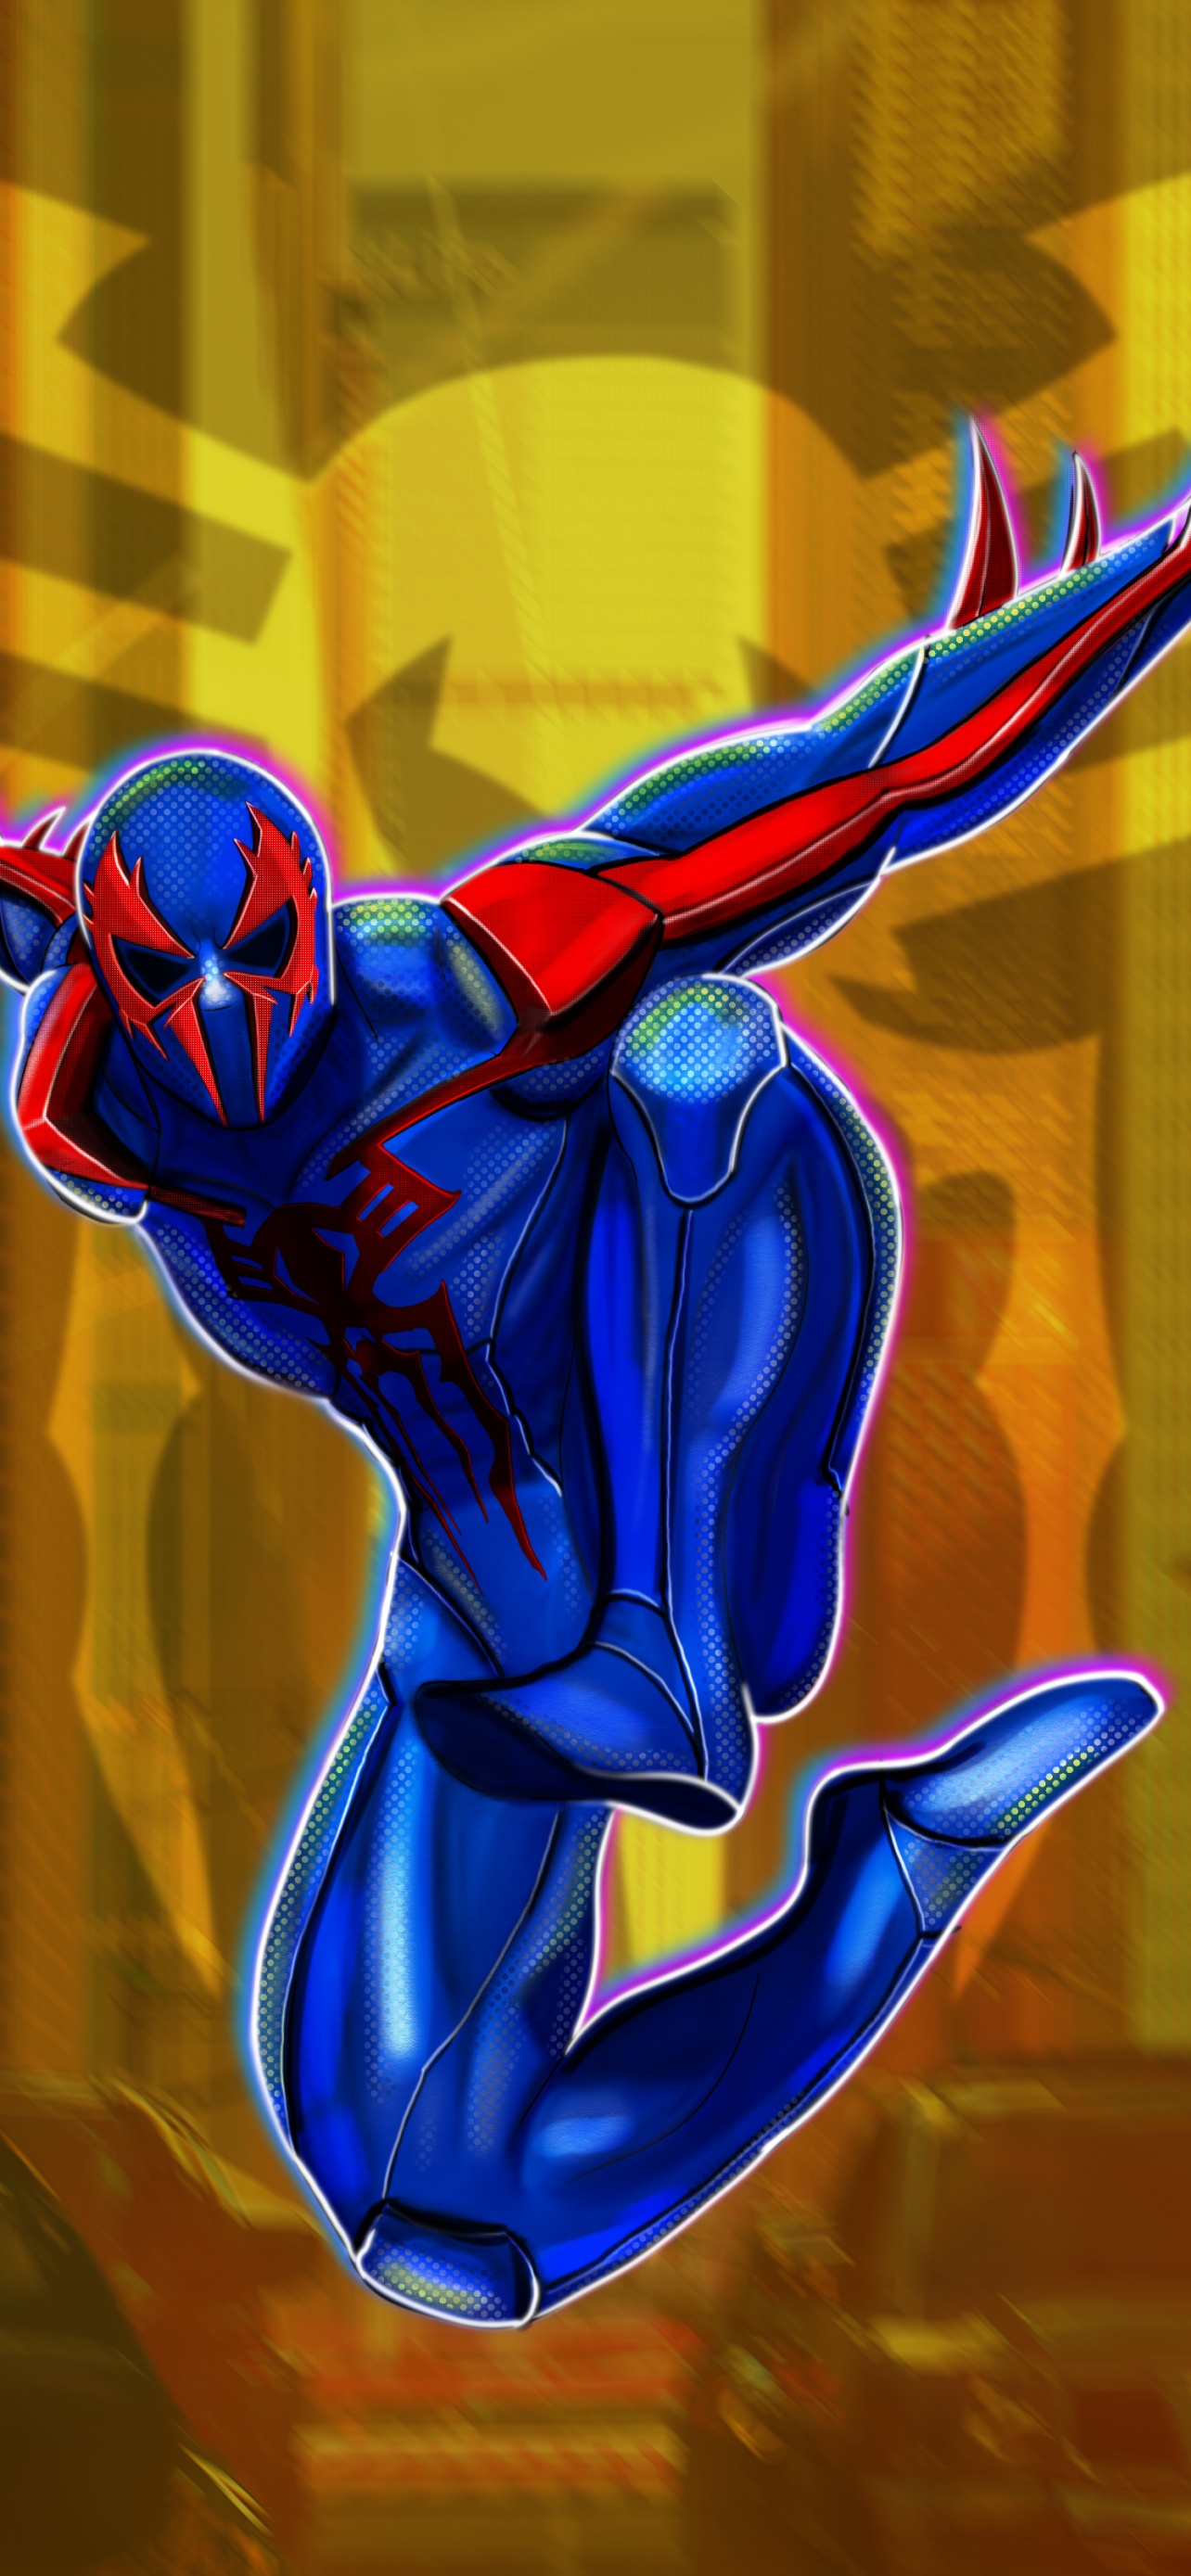 SpiderMan 2099 Wallpaper in 2023  Marvel spiderman art Spiderman  wallpaper Spiderman artwork